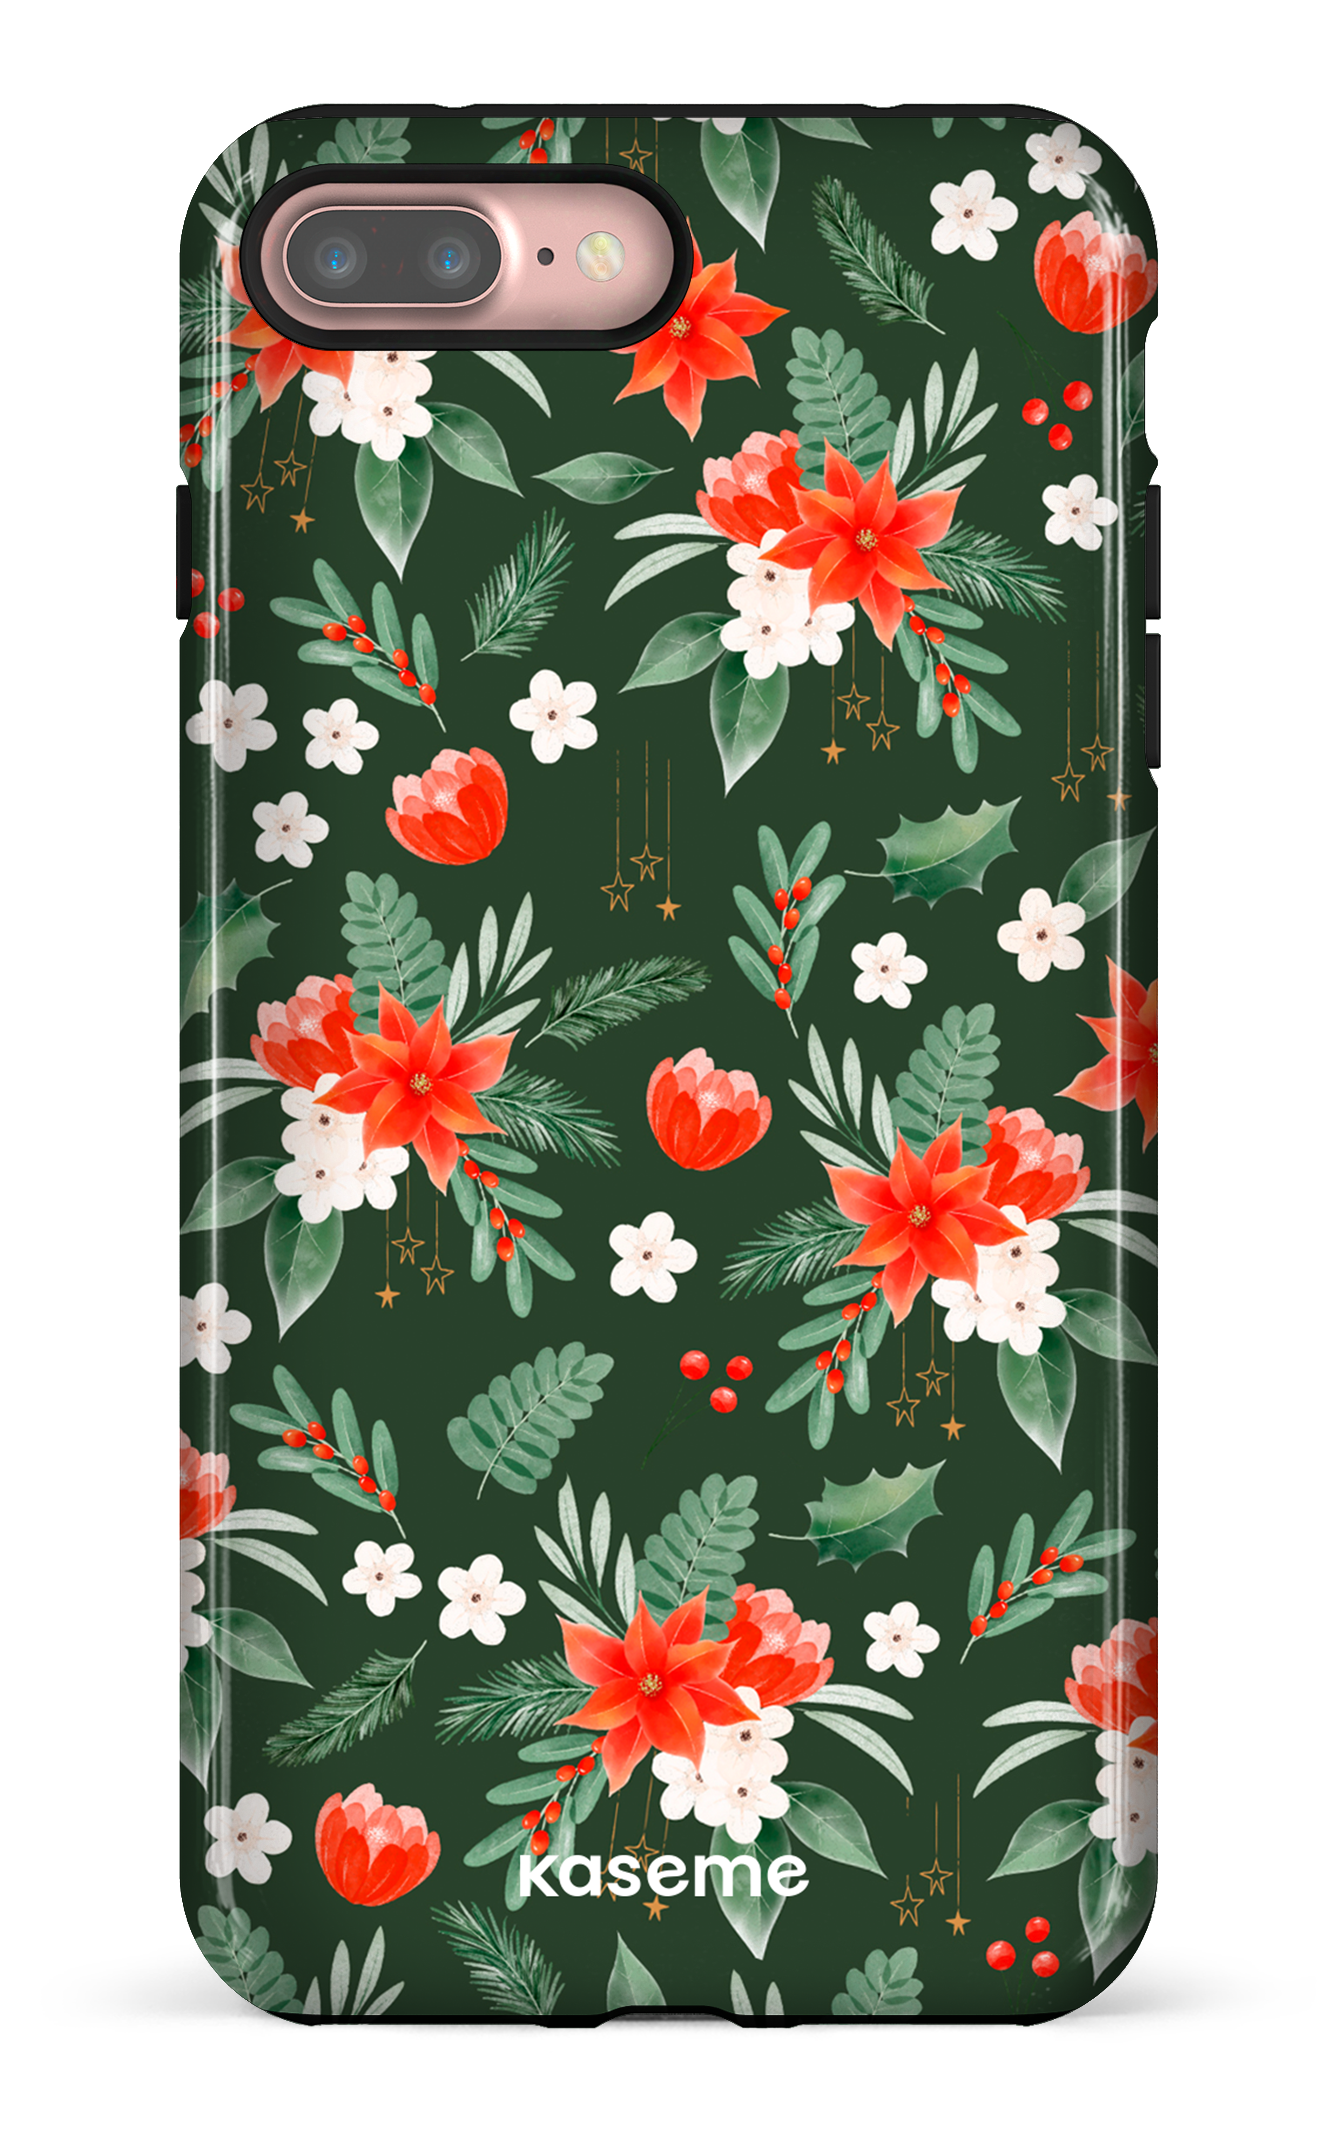 Poinsettia - iPhone 7 Plus